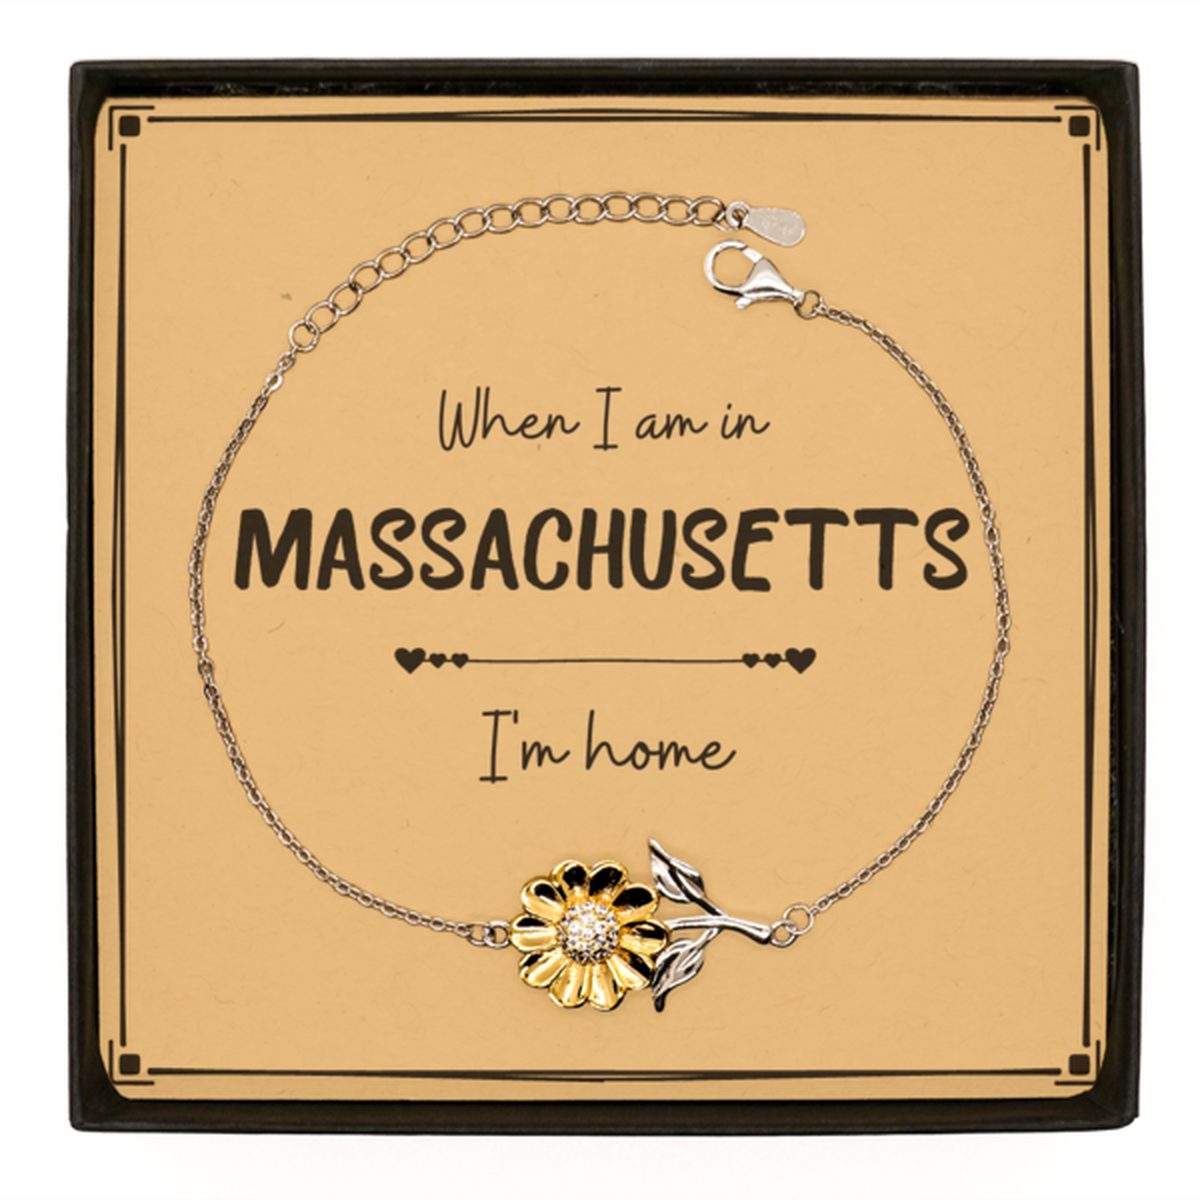 When I am in Massachusetts I'm home Sunflower Bracelet, Message Card Gifts For Massachusetts, State Massachusetts Birthday Gifts for Friends Coworker